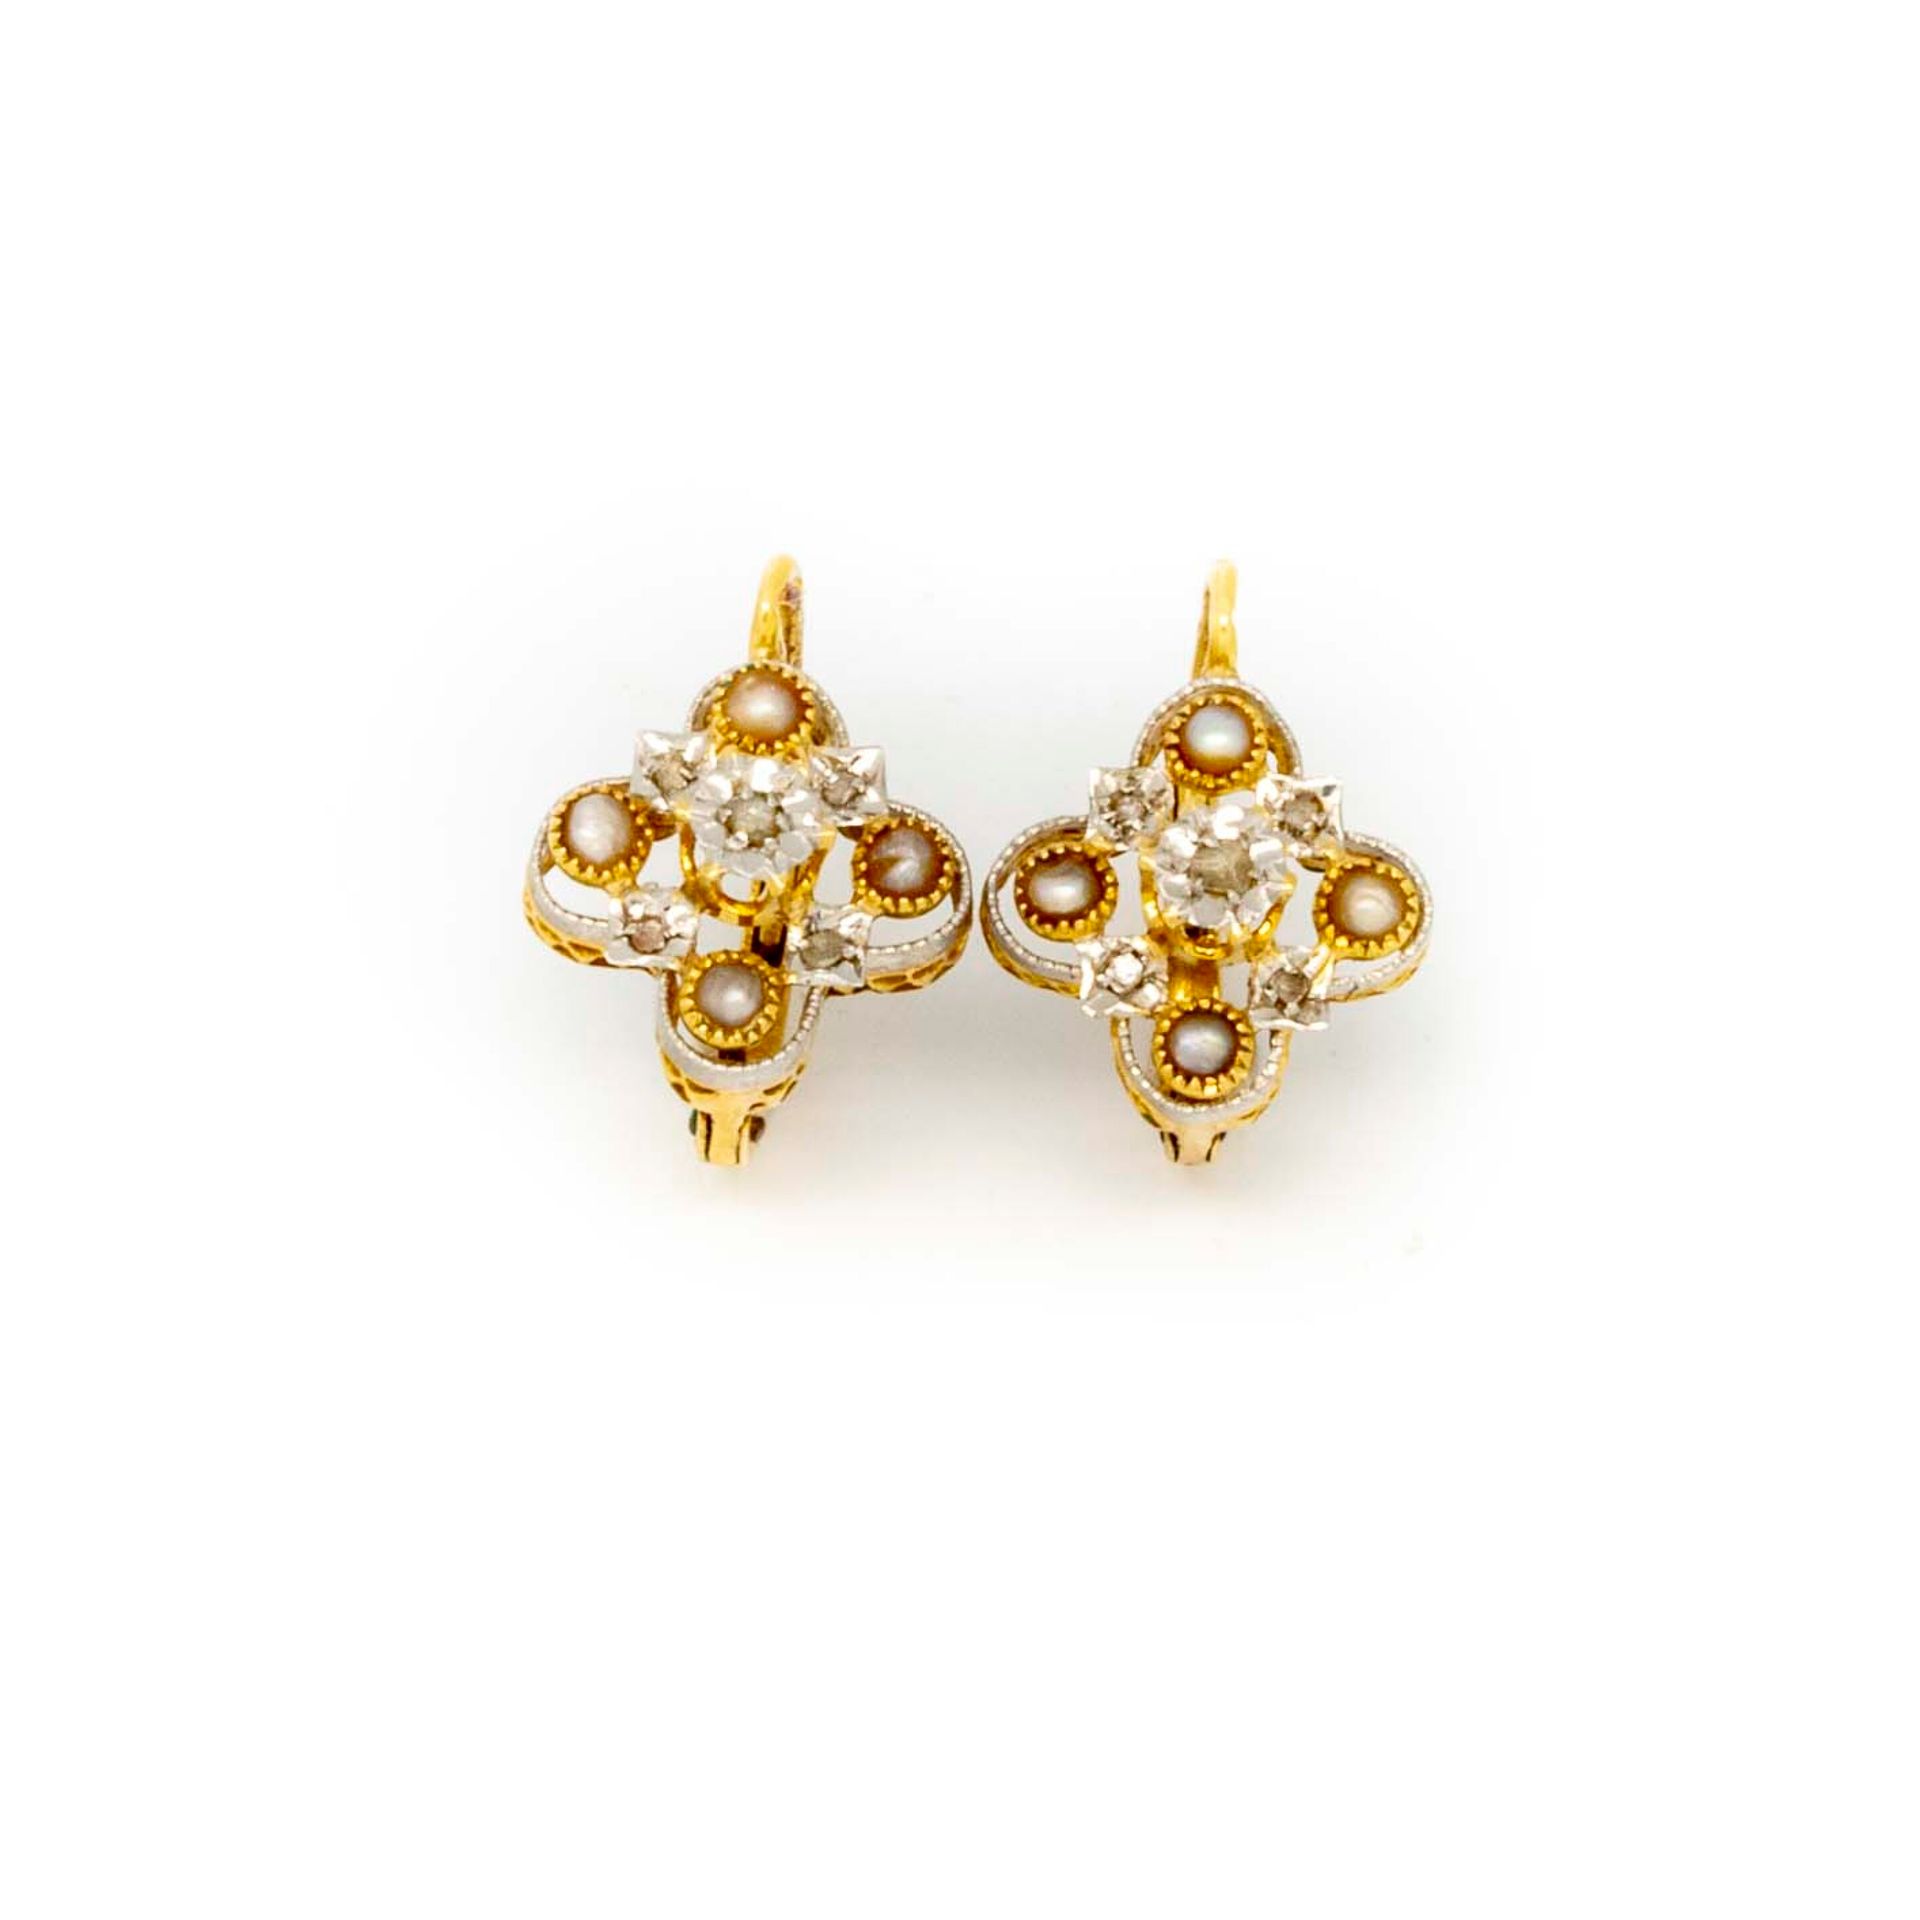 Null Paar Ohrringe aus Gelbgold, Kleeblattmuster mit kleinen Perlen

Bruttogewic&hellip;